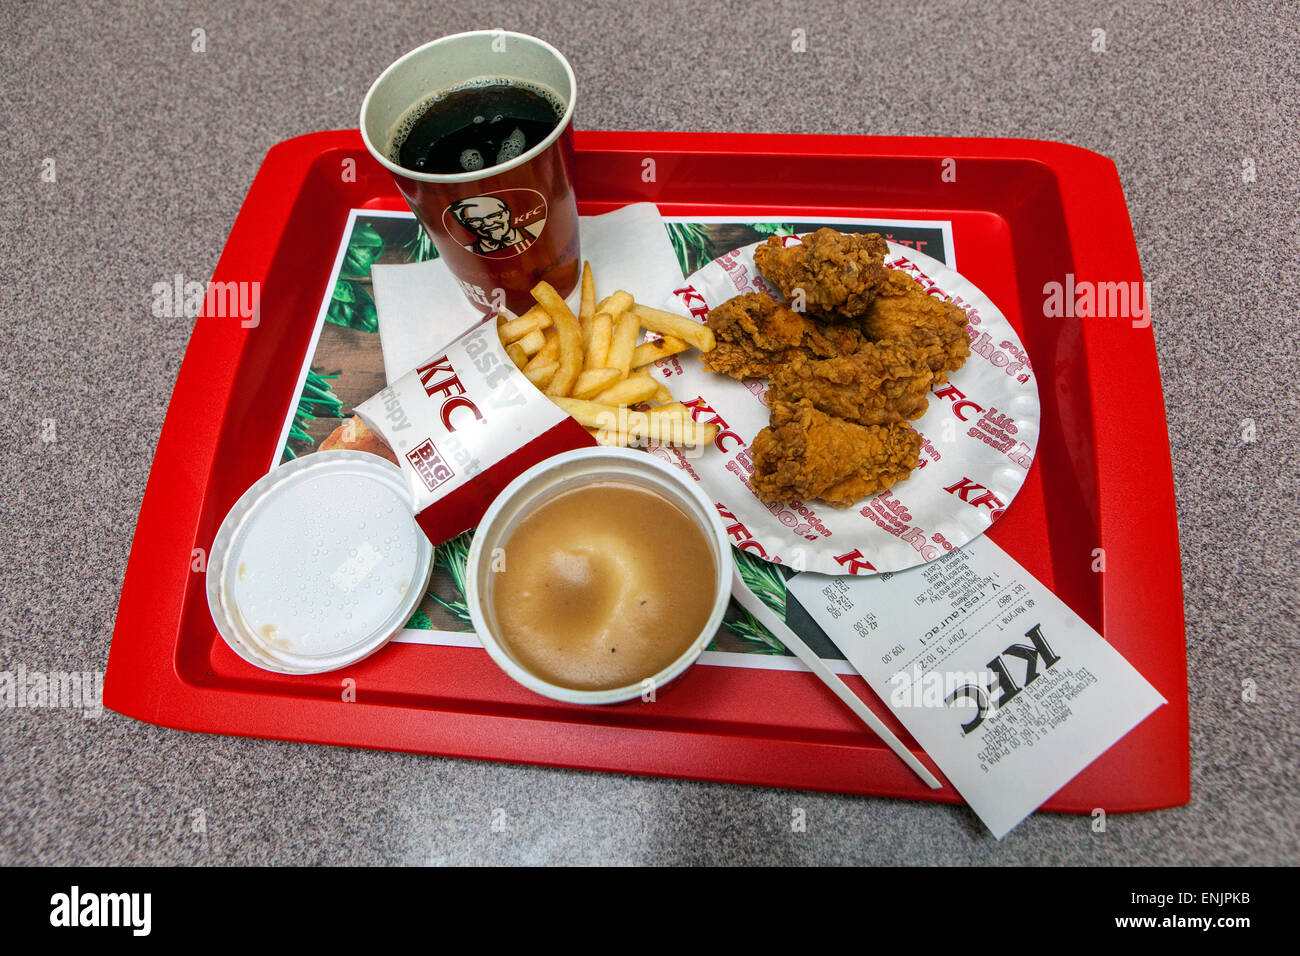 KFC meal, hot wings menu Stock Photo